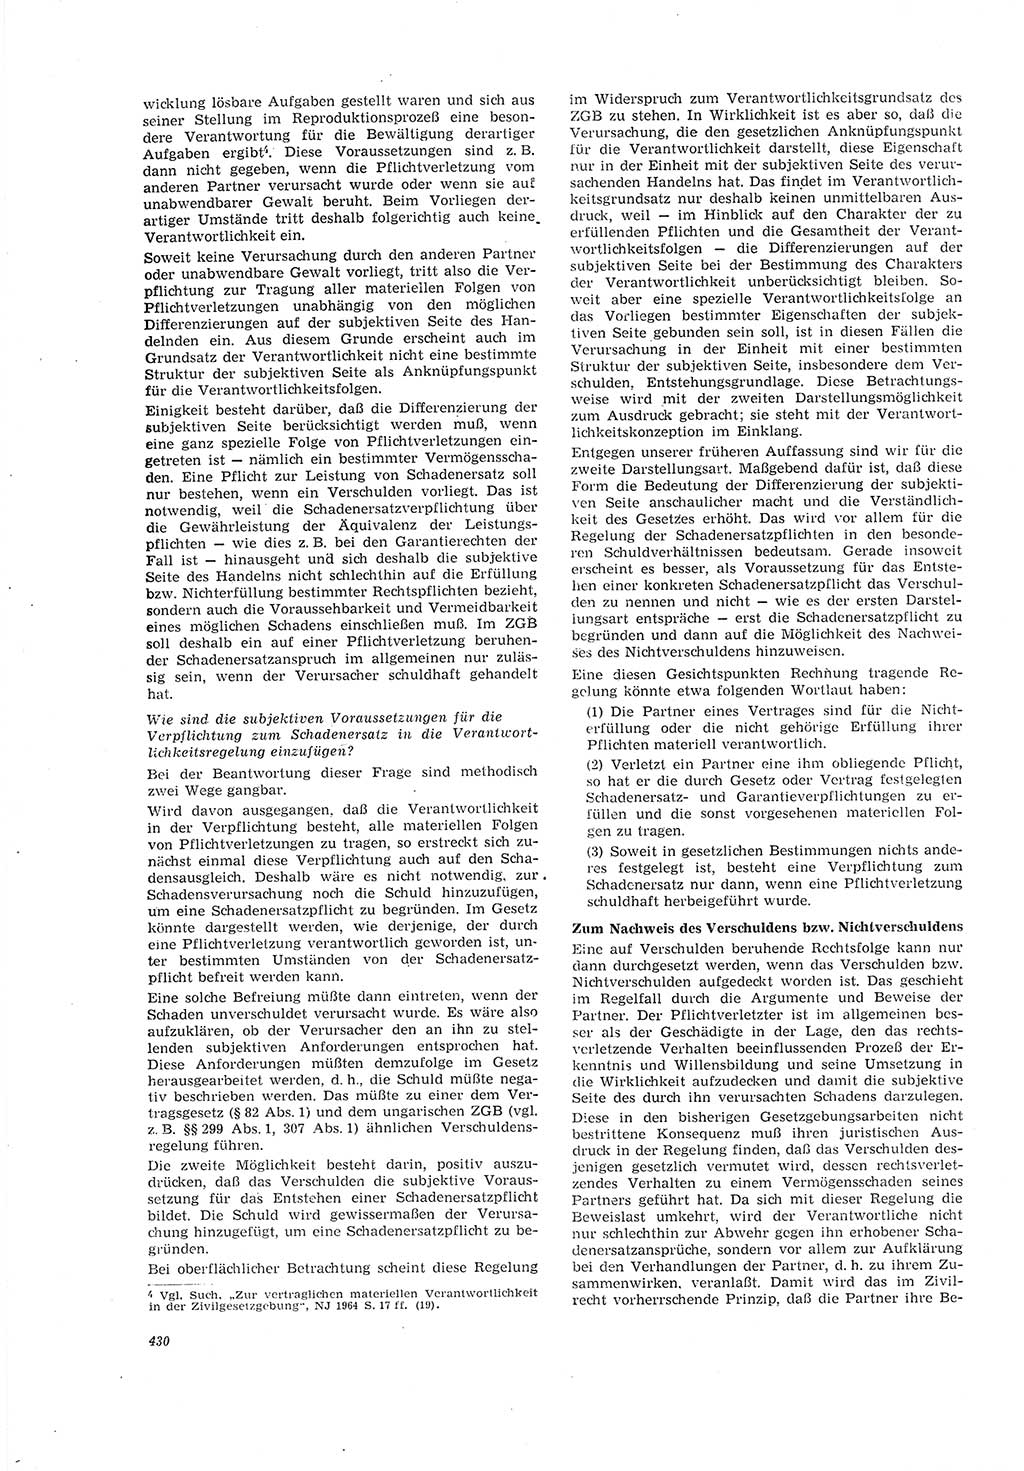 Neue Justiz (NJ), Zeitschrift für Recht und Rechtswissenschaft [Deutsche Demokratische Republik (DDR)], 20. Jahrgang 1966, Seite 430 (NJ DDR 1966, S. 430)